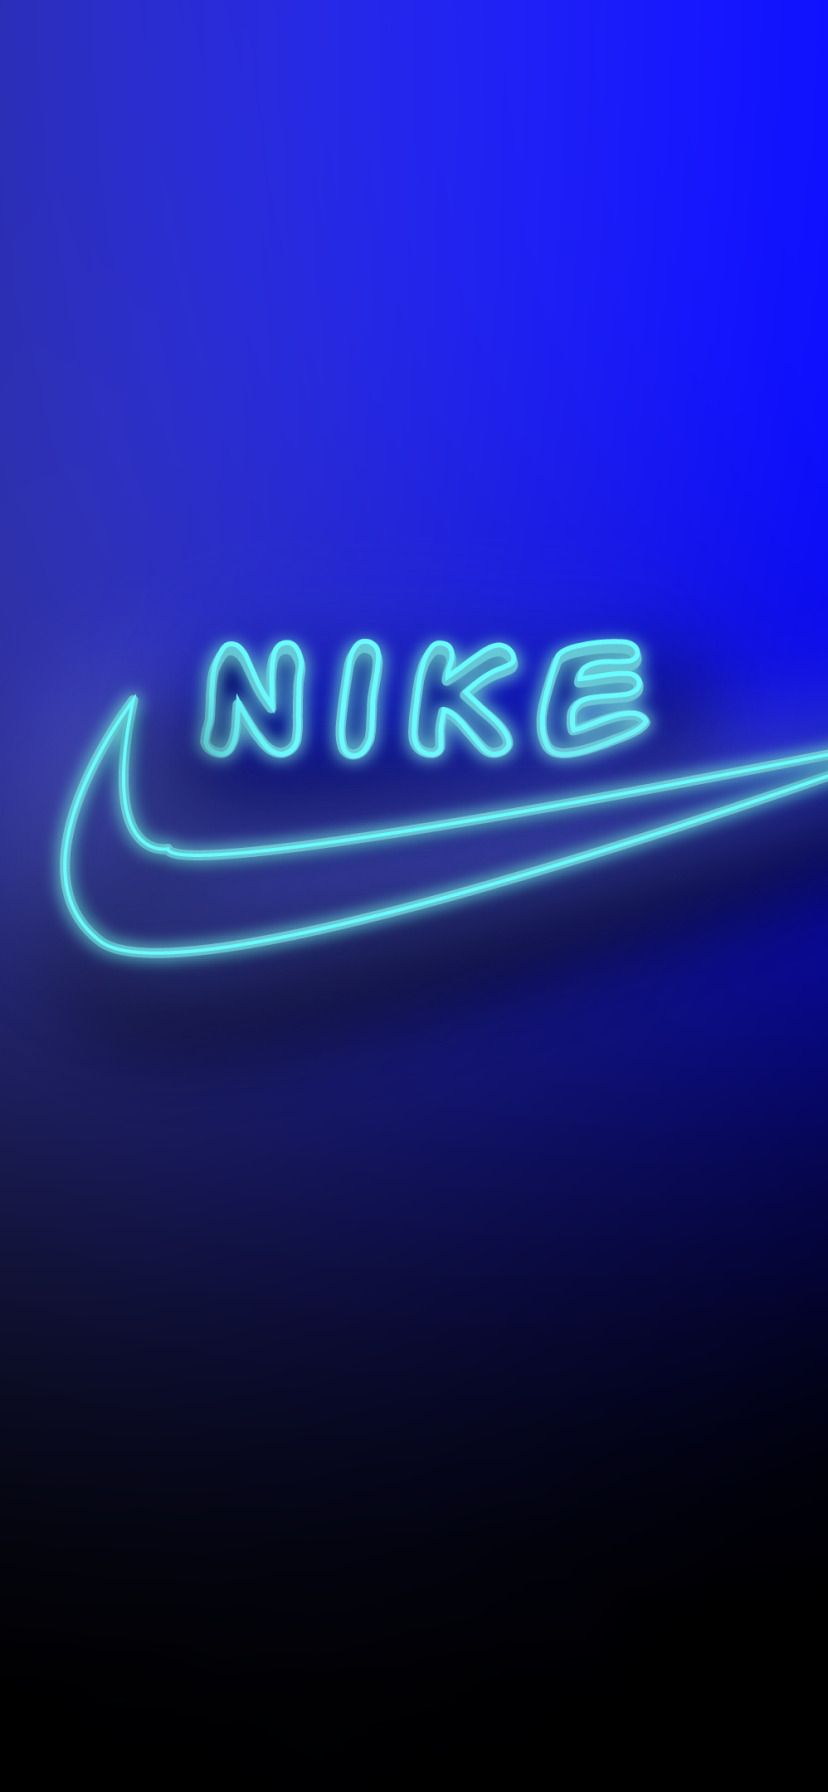 Nike Phone Wallpaper